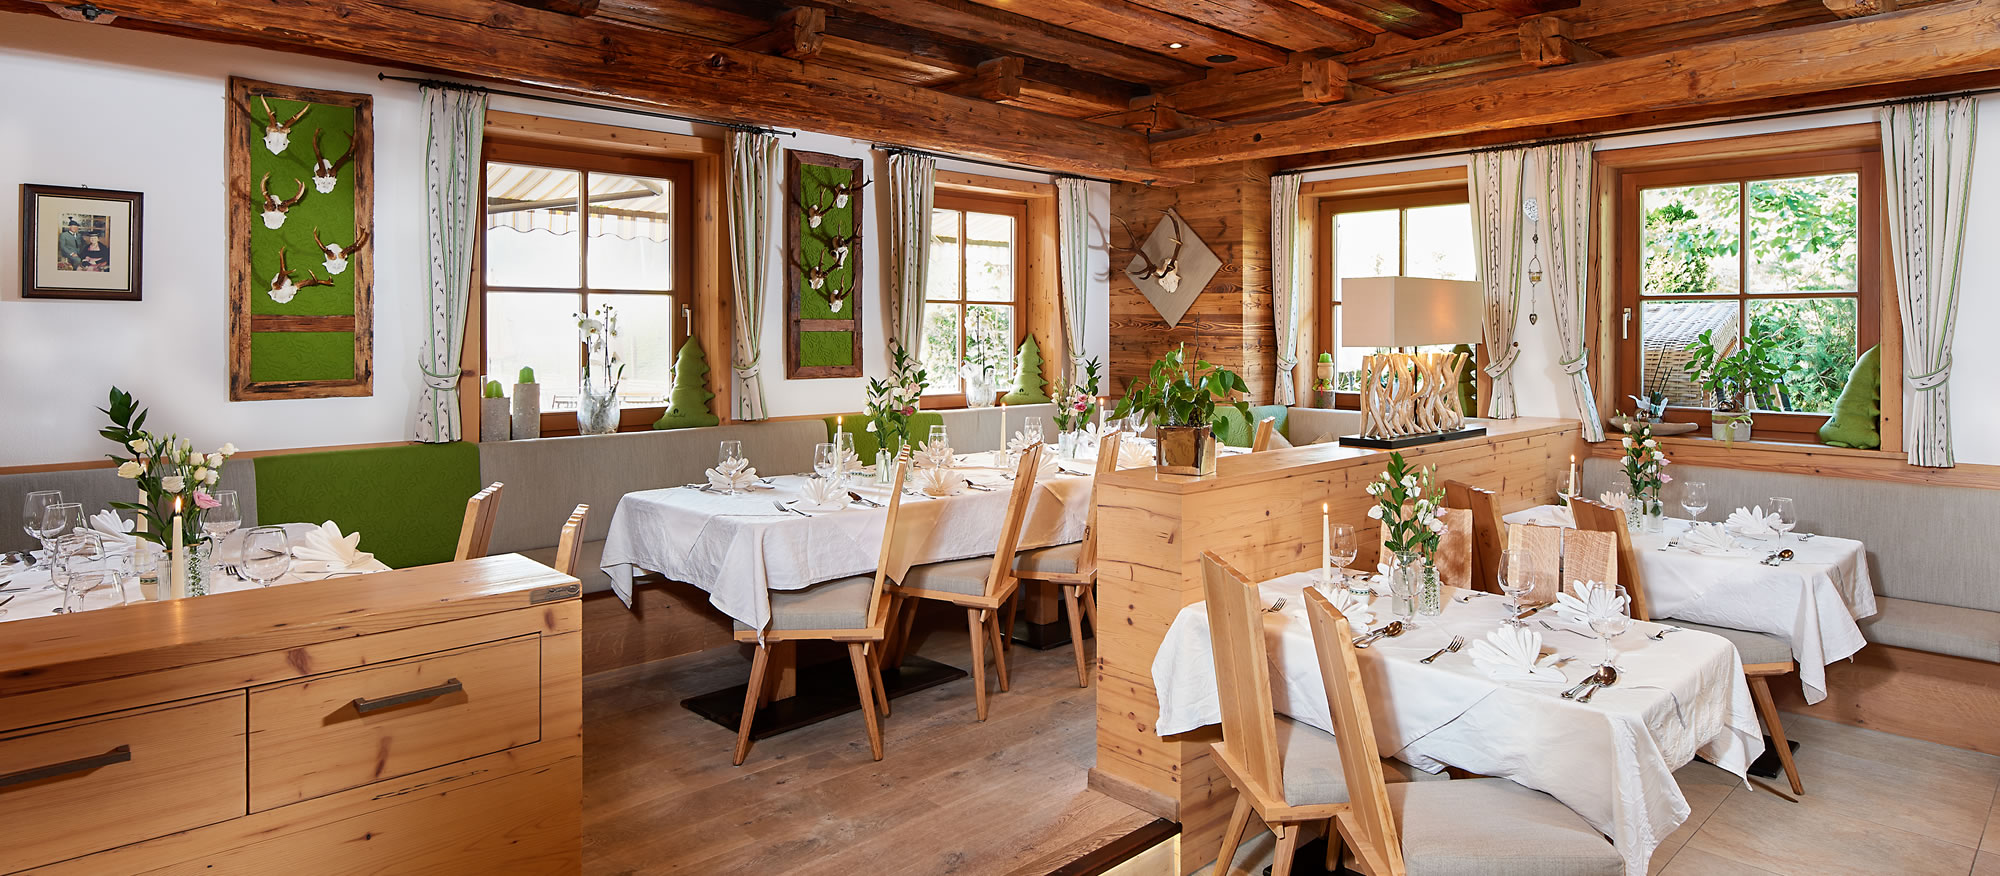 Restaurant mit Stuben in stilvoll-traditionellem Ambiente